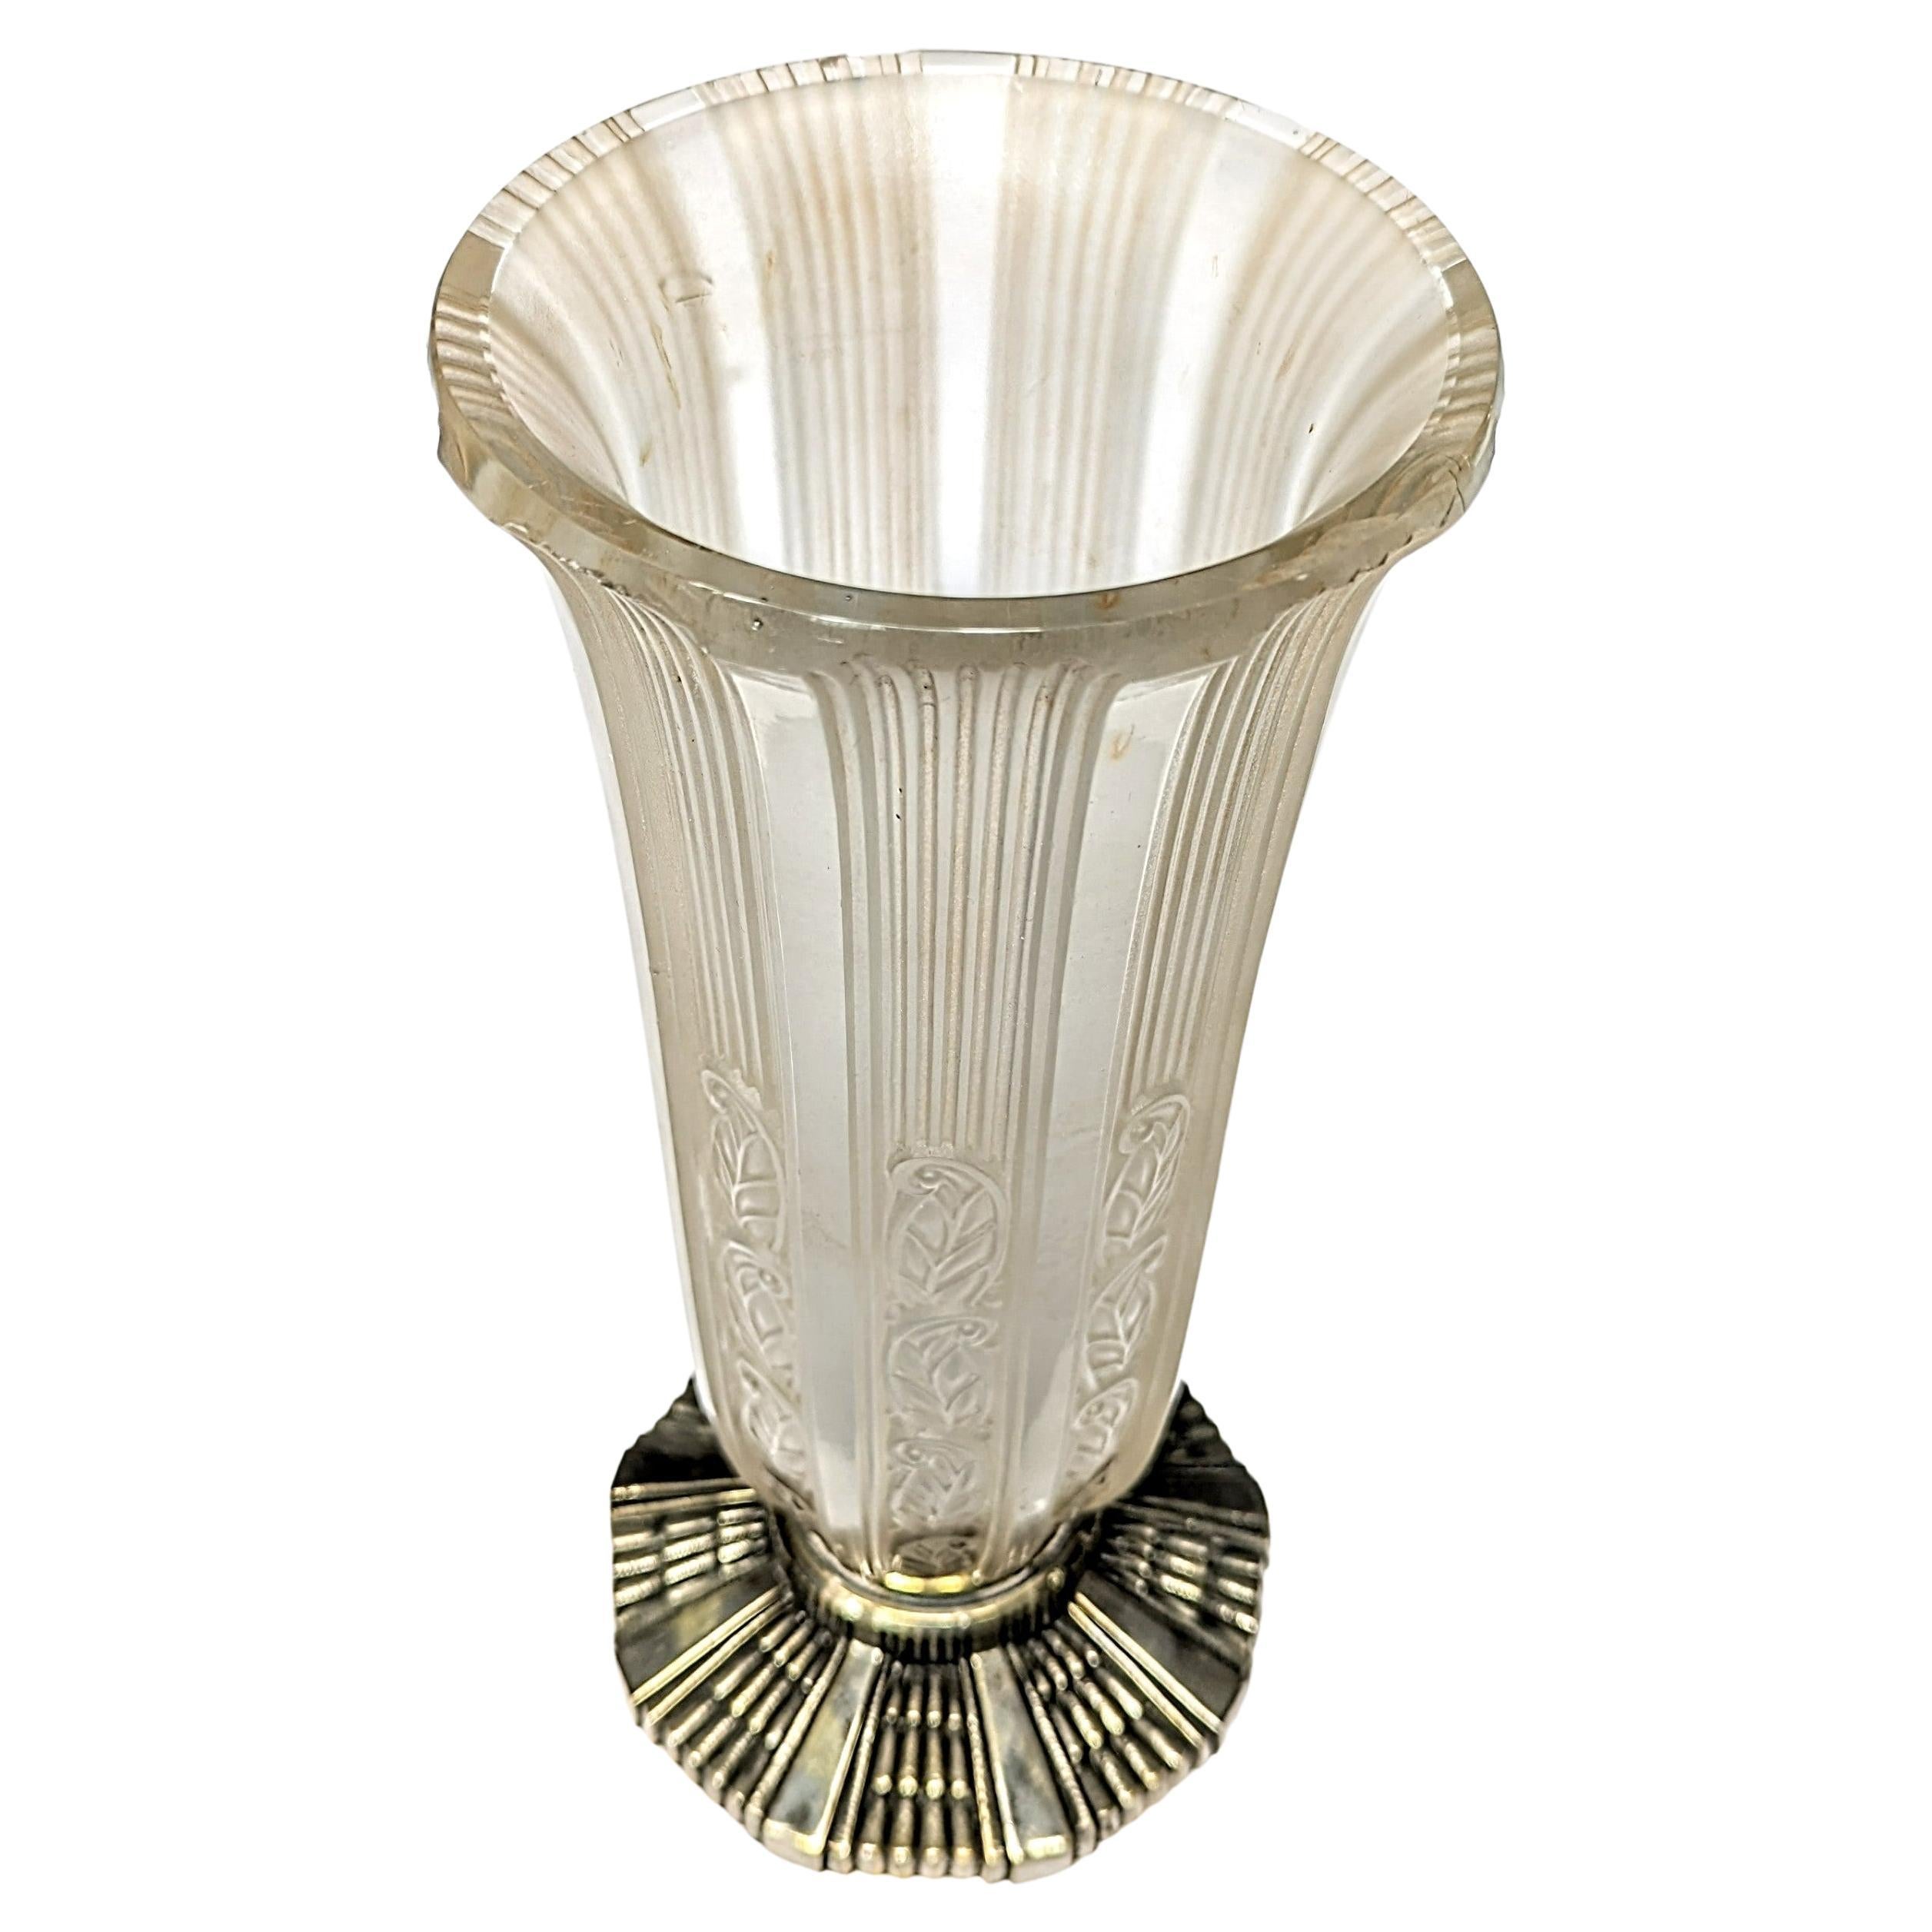 Superbe vase en verre Art déco français avec motif floral sur toute la surface et base décorative en bronze par Hettier et Vincent en très bon état. Dépôt gratuit dans la région des trois États. Nous sommes la rare source qui se spécialise